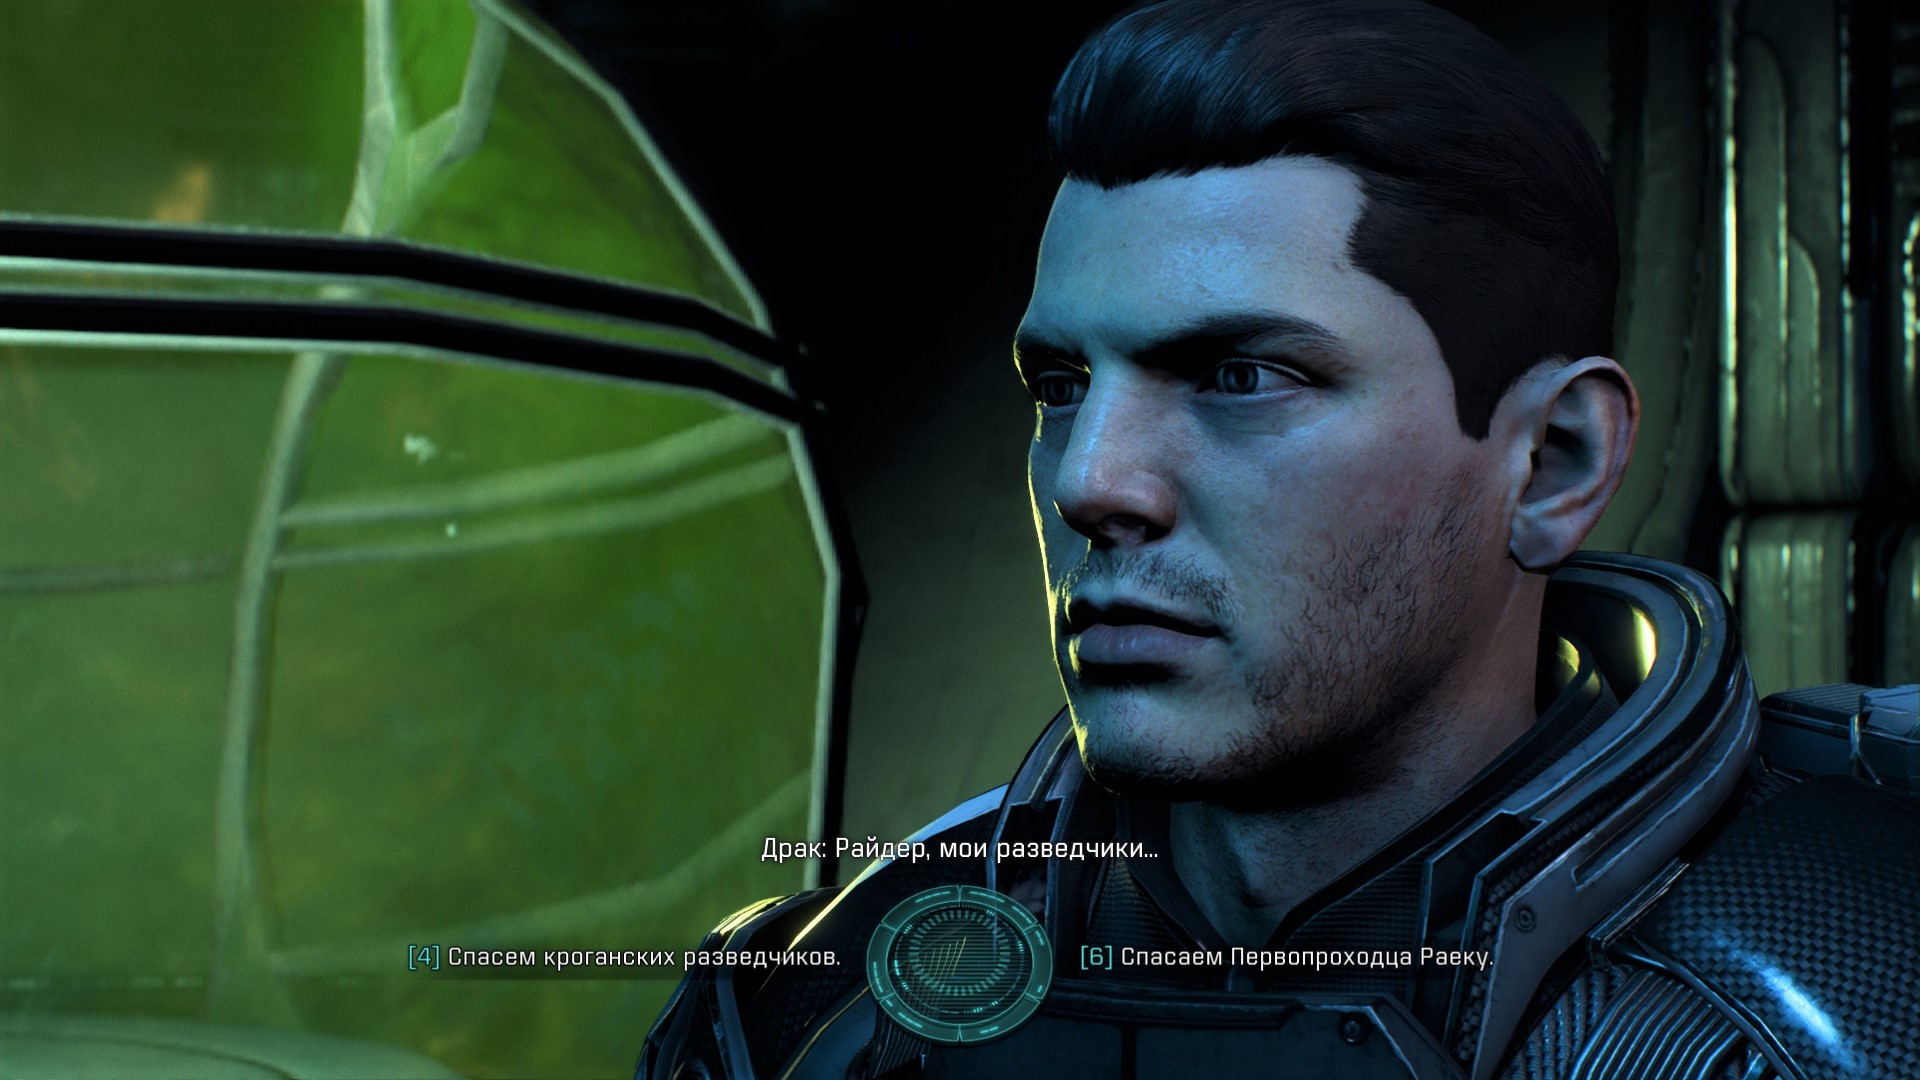 You are currently viewing Спасти разведчиков Драка или первопроходца Раеку? Mass Effect: Andromeda.